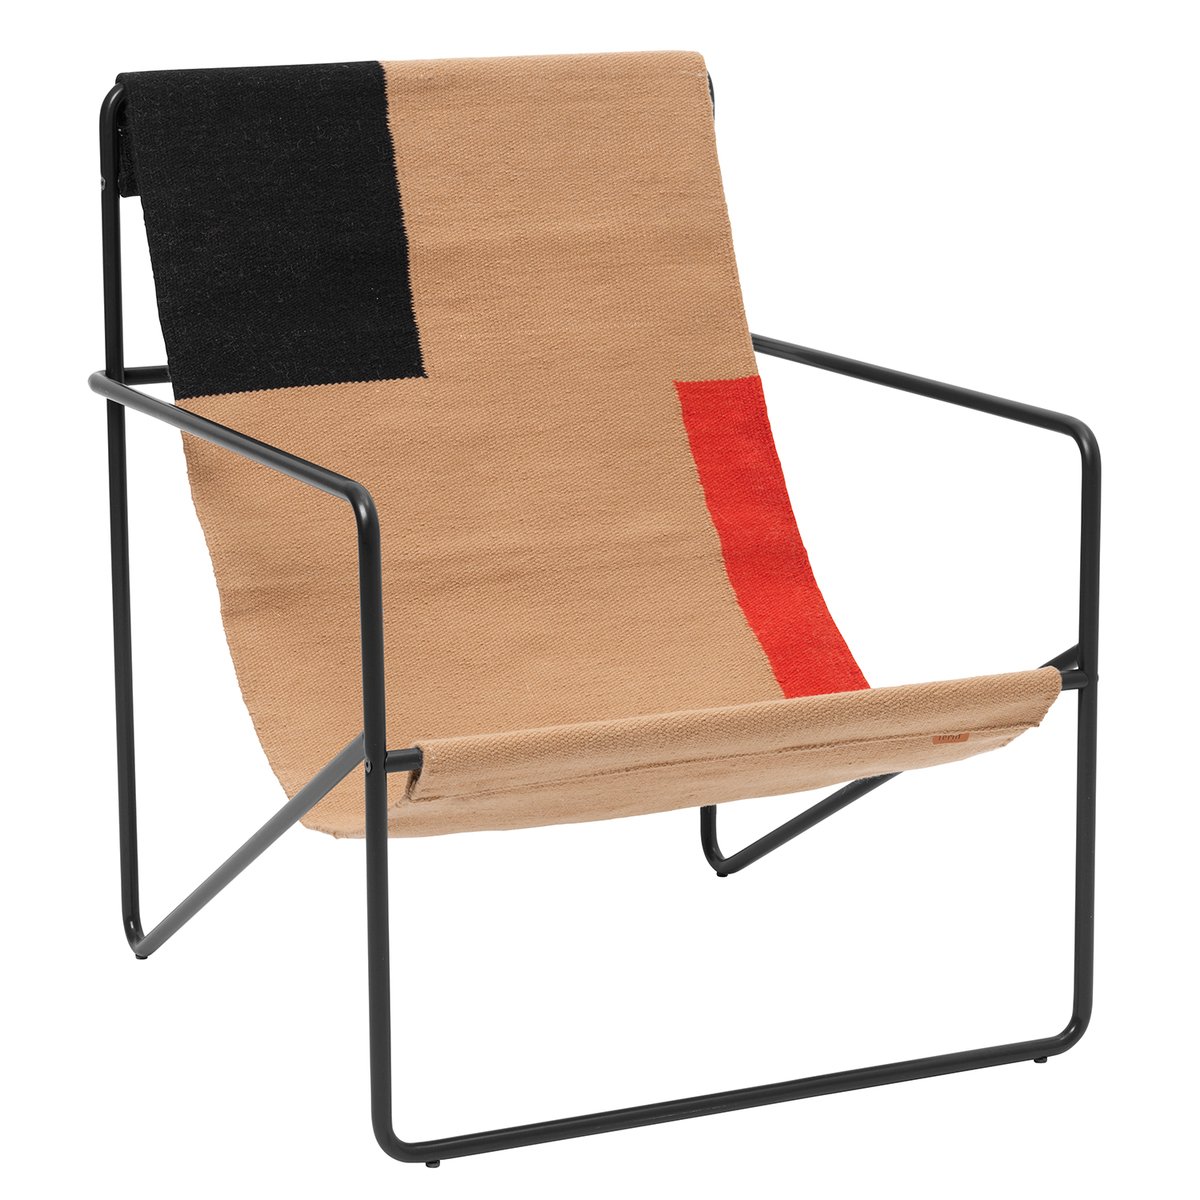 Ferm Living Desert Lounge Chair Black Block Finnish Design Shop